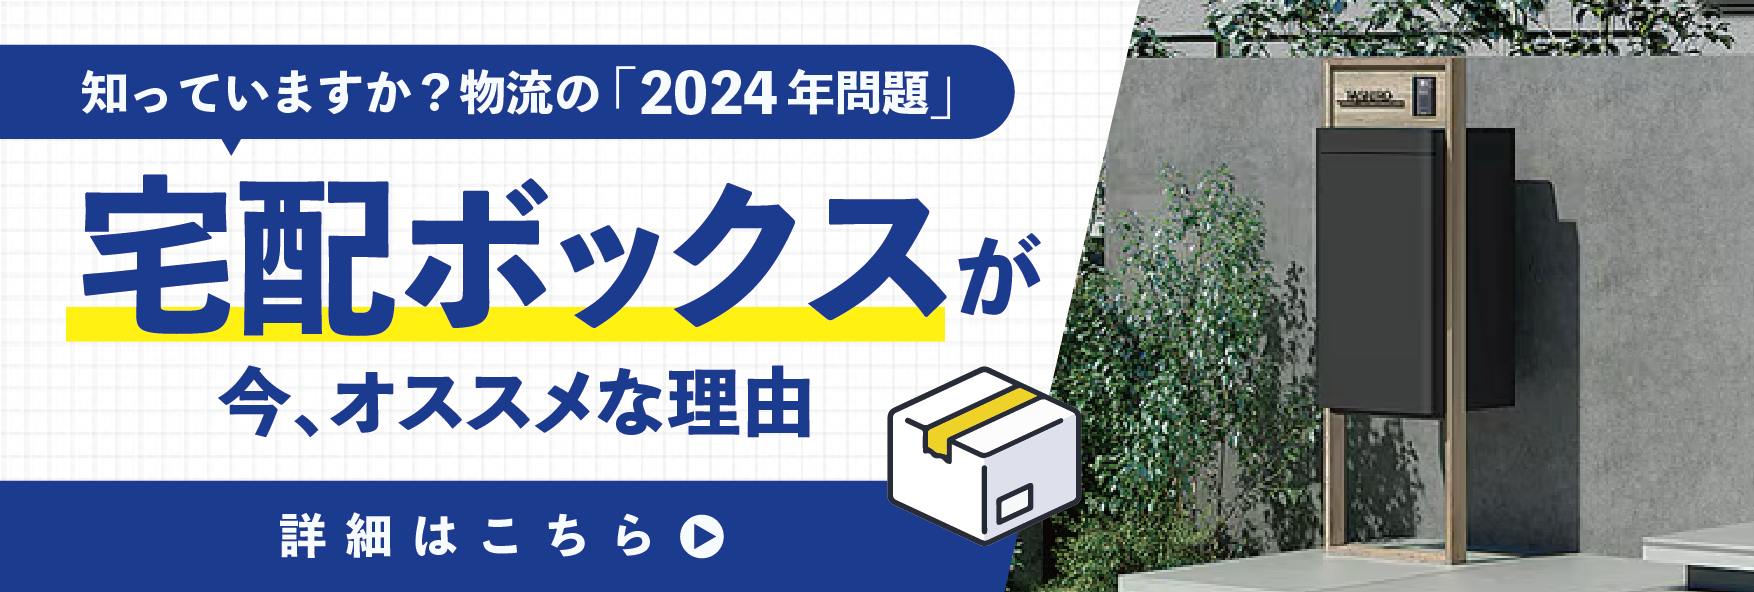 【あと1年で再配達できなくなる!?】物流の2024年問題と対策 南横浜トーヨー住器のイベントキャンペーン 写真3